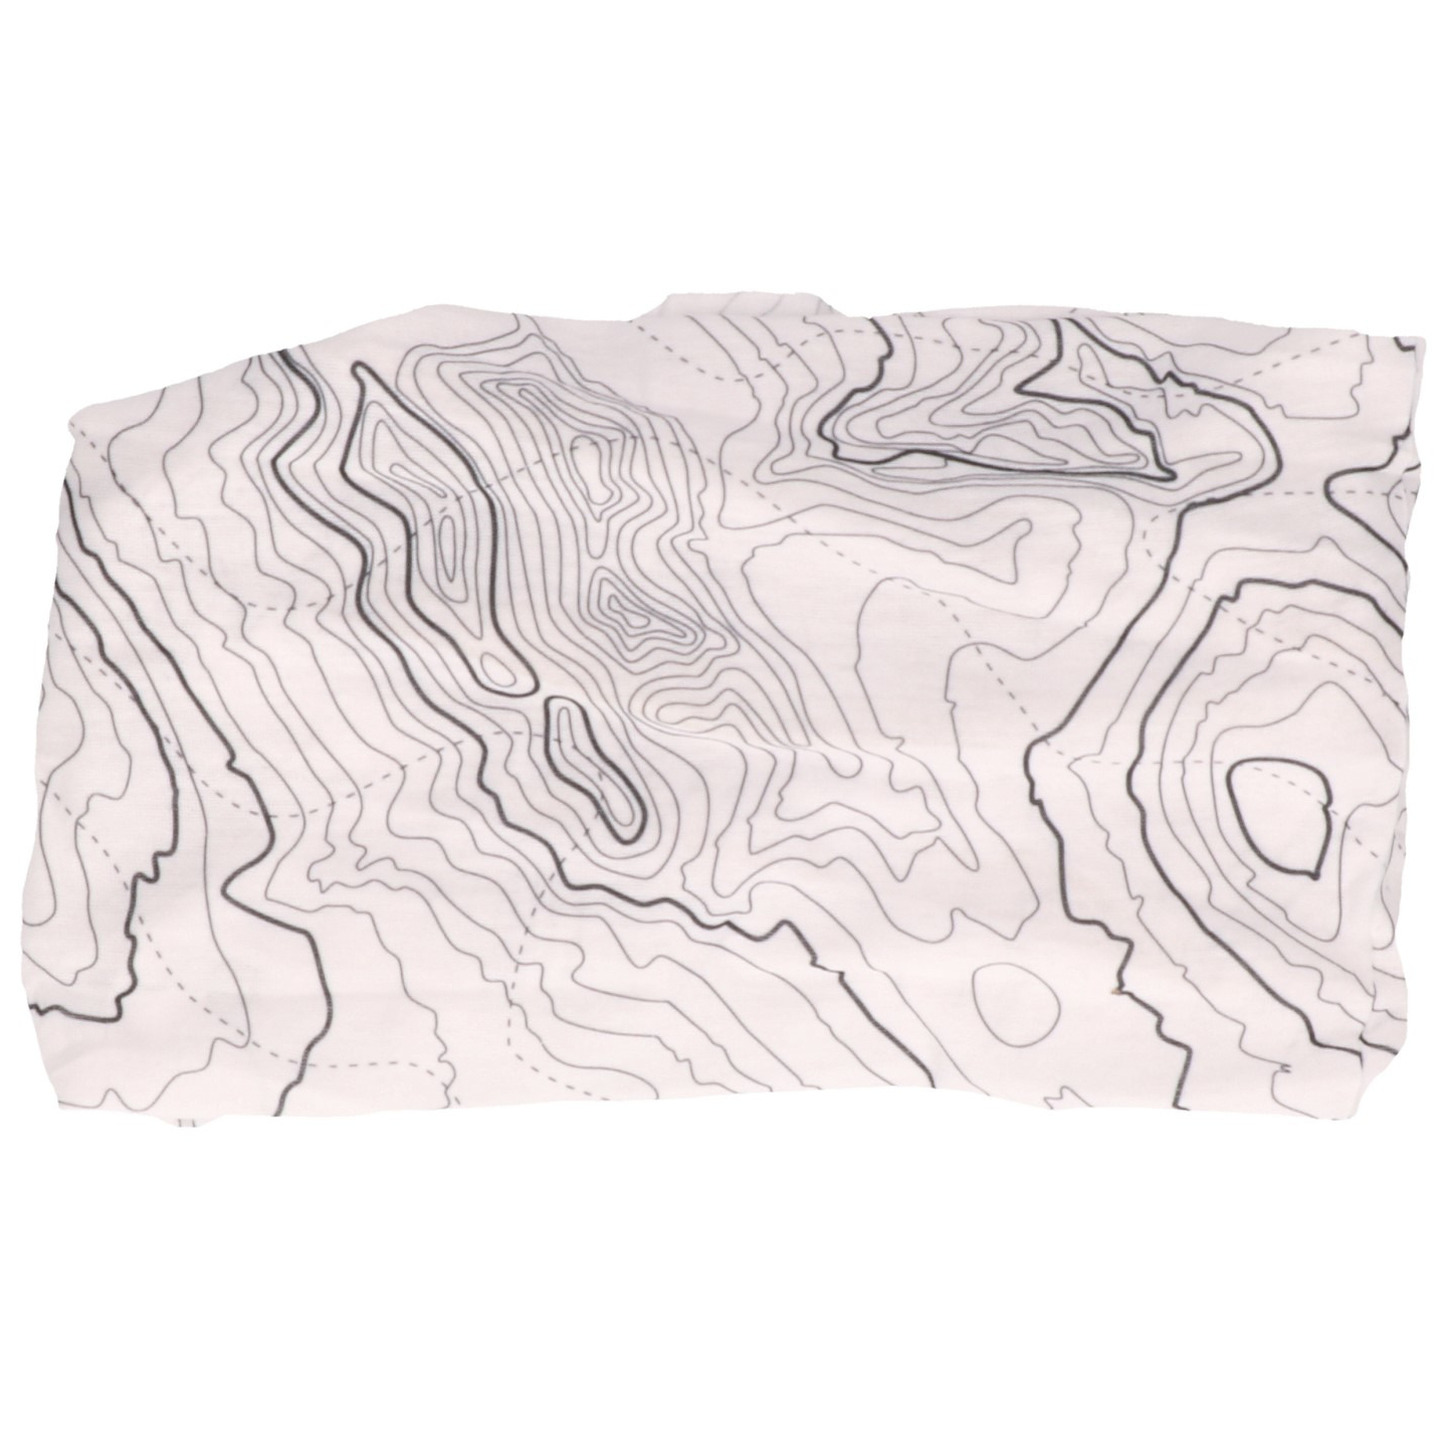 Multifunctionele morf sjaal wit met contour print voor volwassen